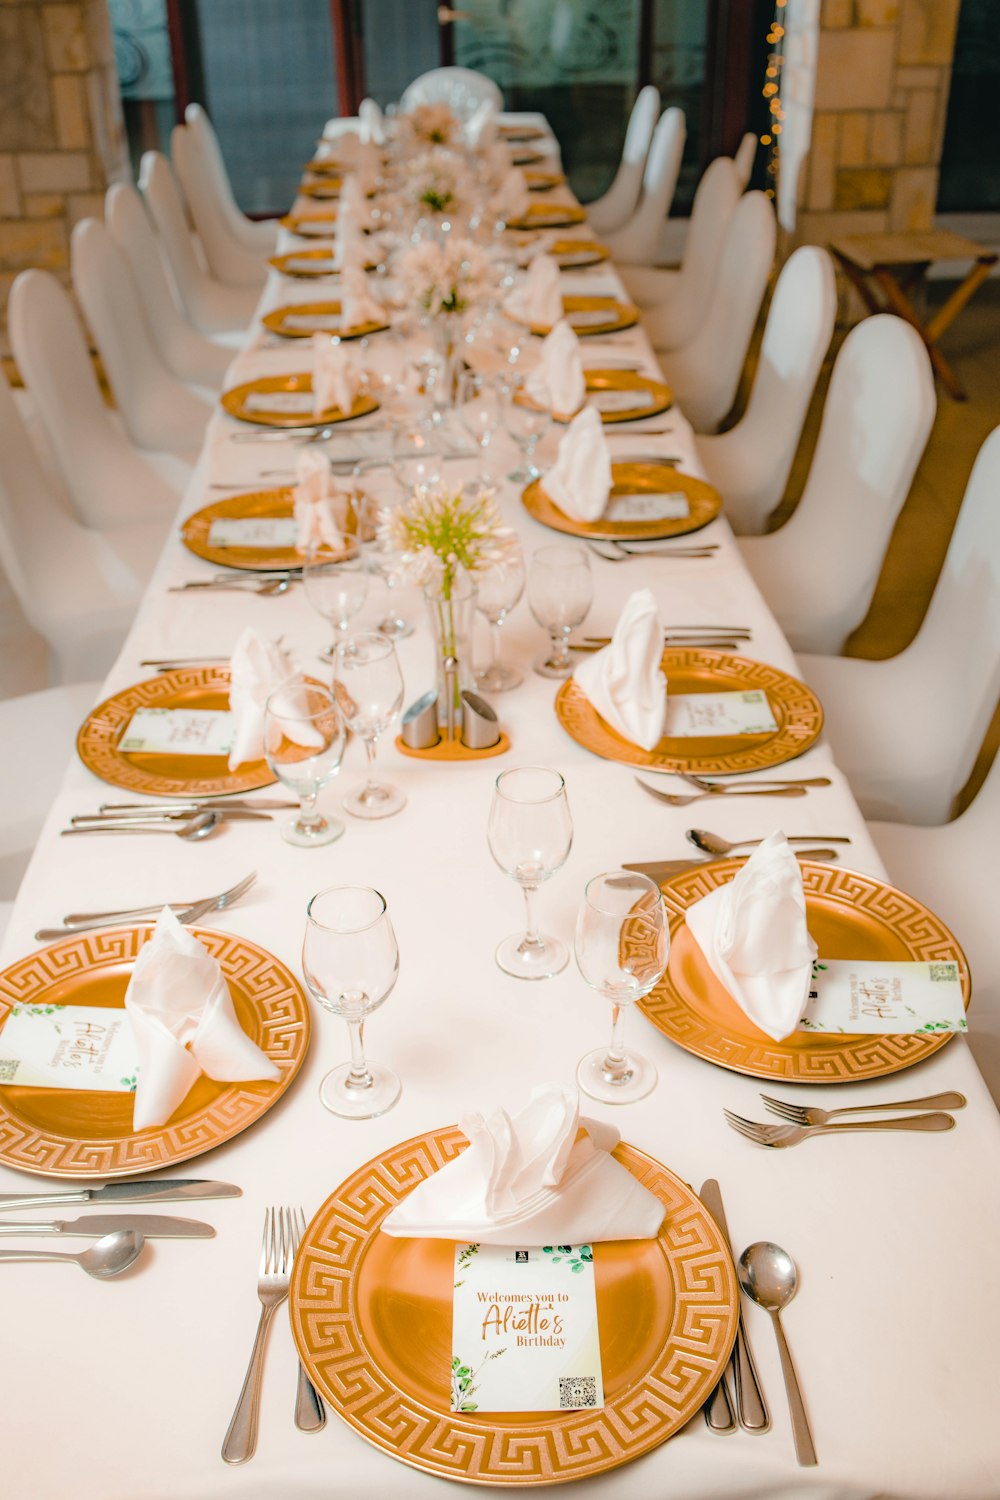 Una mesa larga puesta para una cena formal